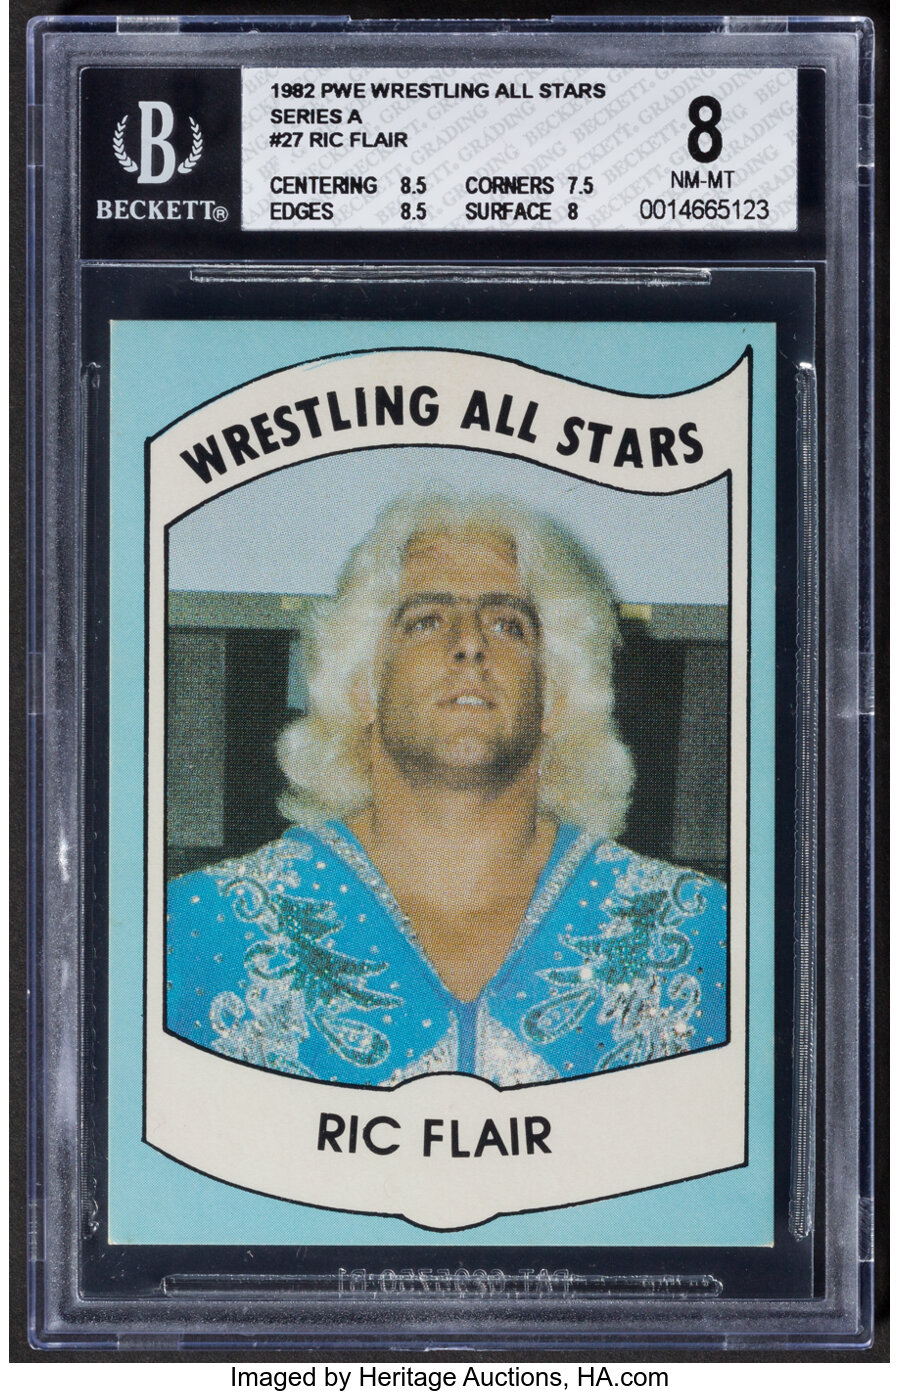 1982 Pro Wrestling Enterprises "Wrestling All Stars" Ric Flair #27 BGS NM-MT 8